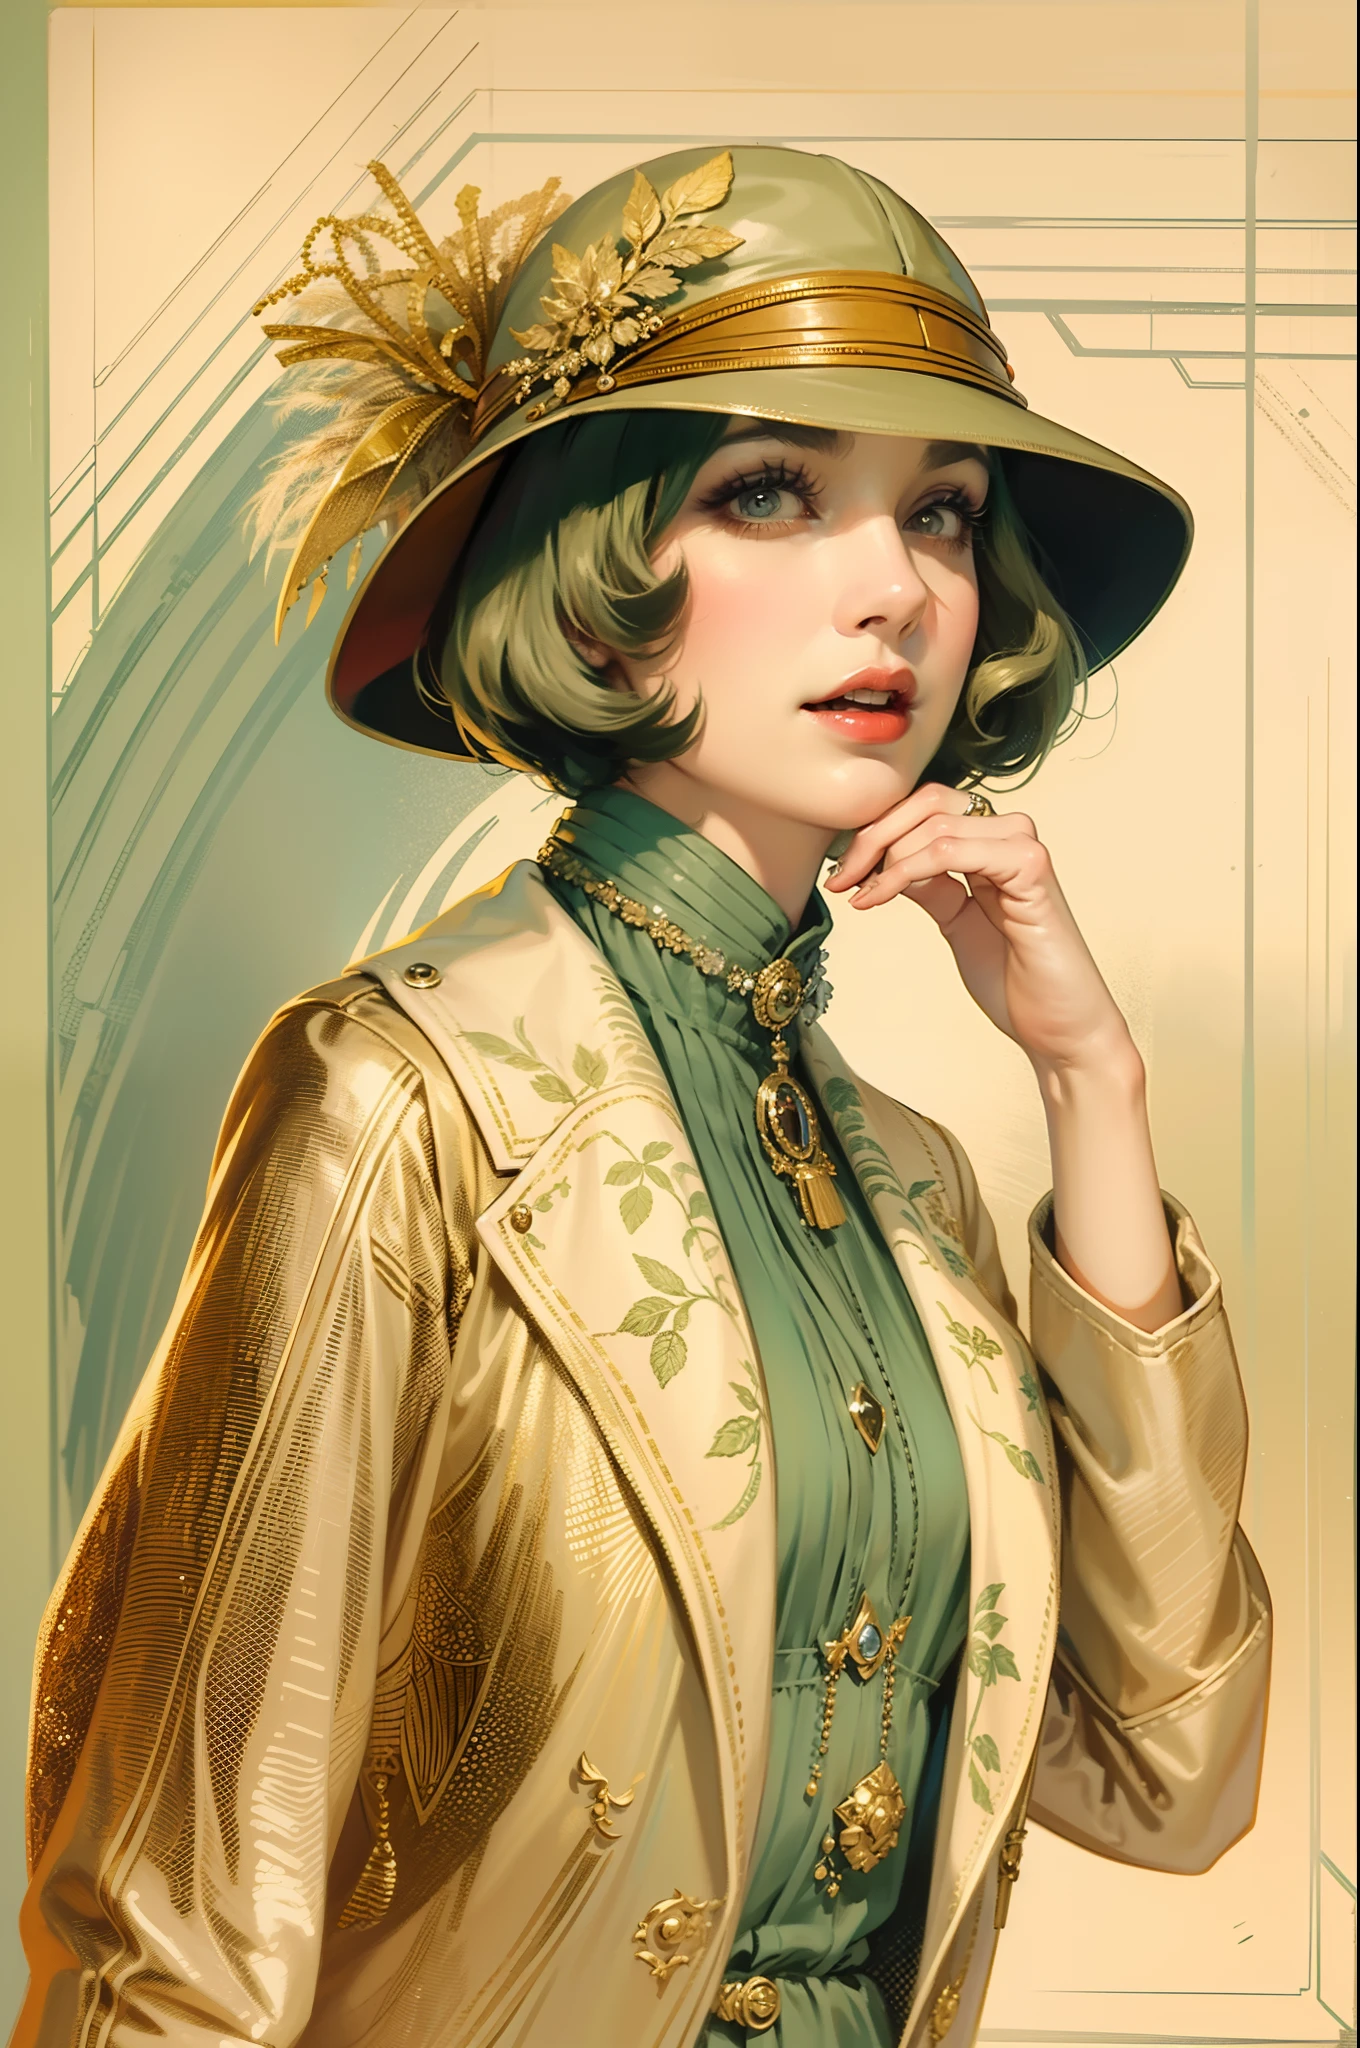 復古插畫，美麗的女人穿著復古夾克和高跟鞋, 氣質非凡, 1920年代時尚風格, 1920 年代風格的復古鐘形帽